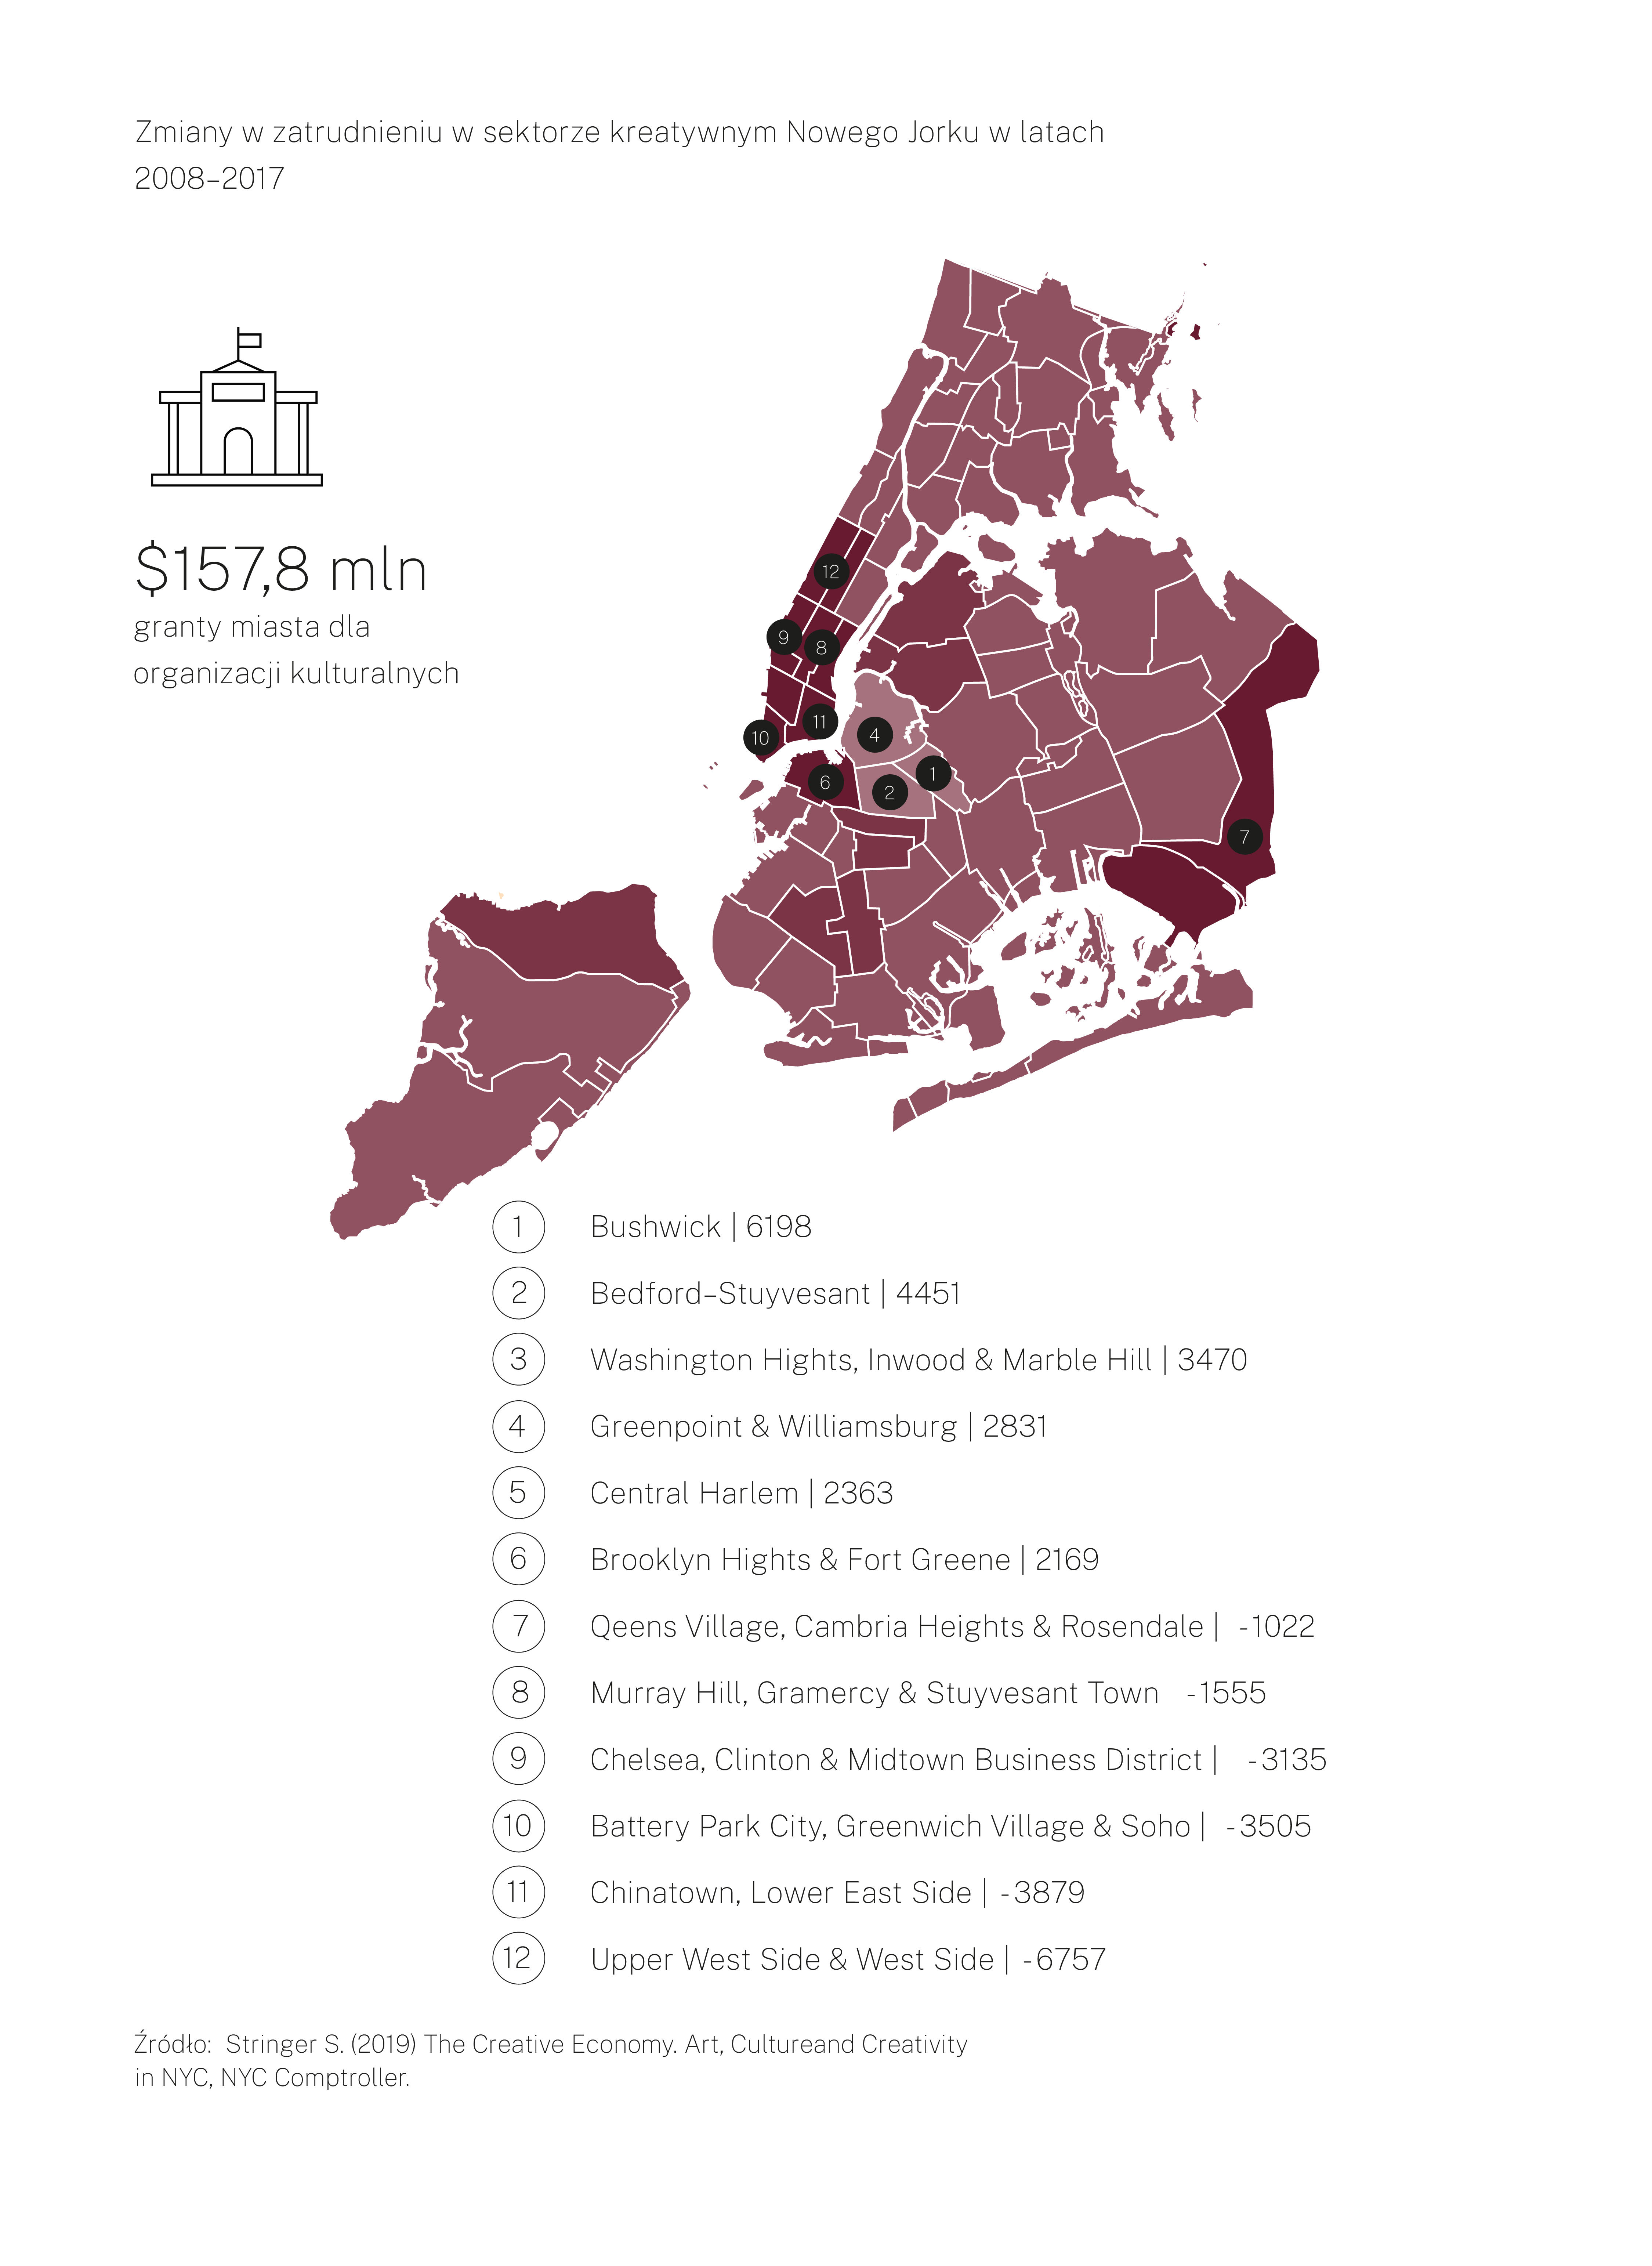 Mapa Nowego Jorku z podziałem na dzielnice. Poniżej zestawienie zmian w liczbie osób zatrudnionych w sektorze kreatywnym w poszczególnych dzielnicach. Największy wzrost w dzielnicy Bushwick (6 tys osób), największy spadek w Upper West i Upper East Side (6 tys)